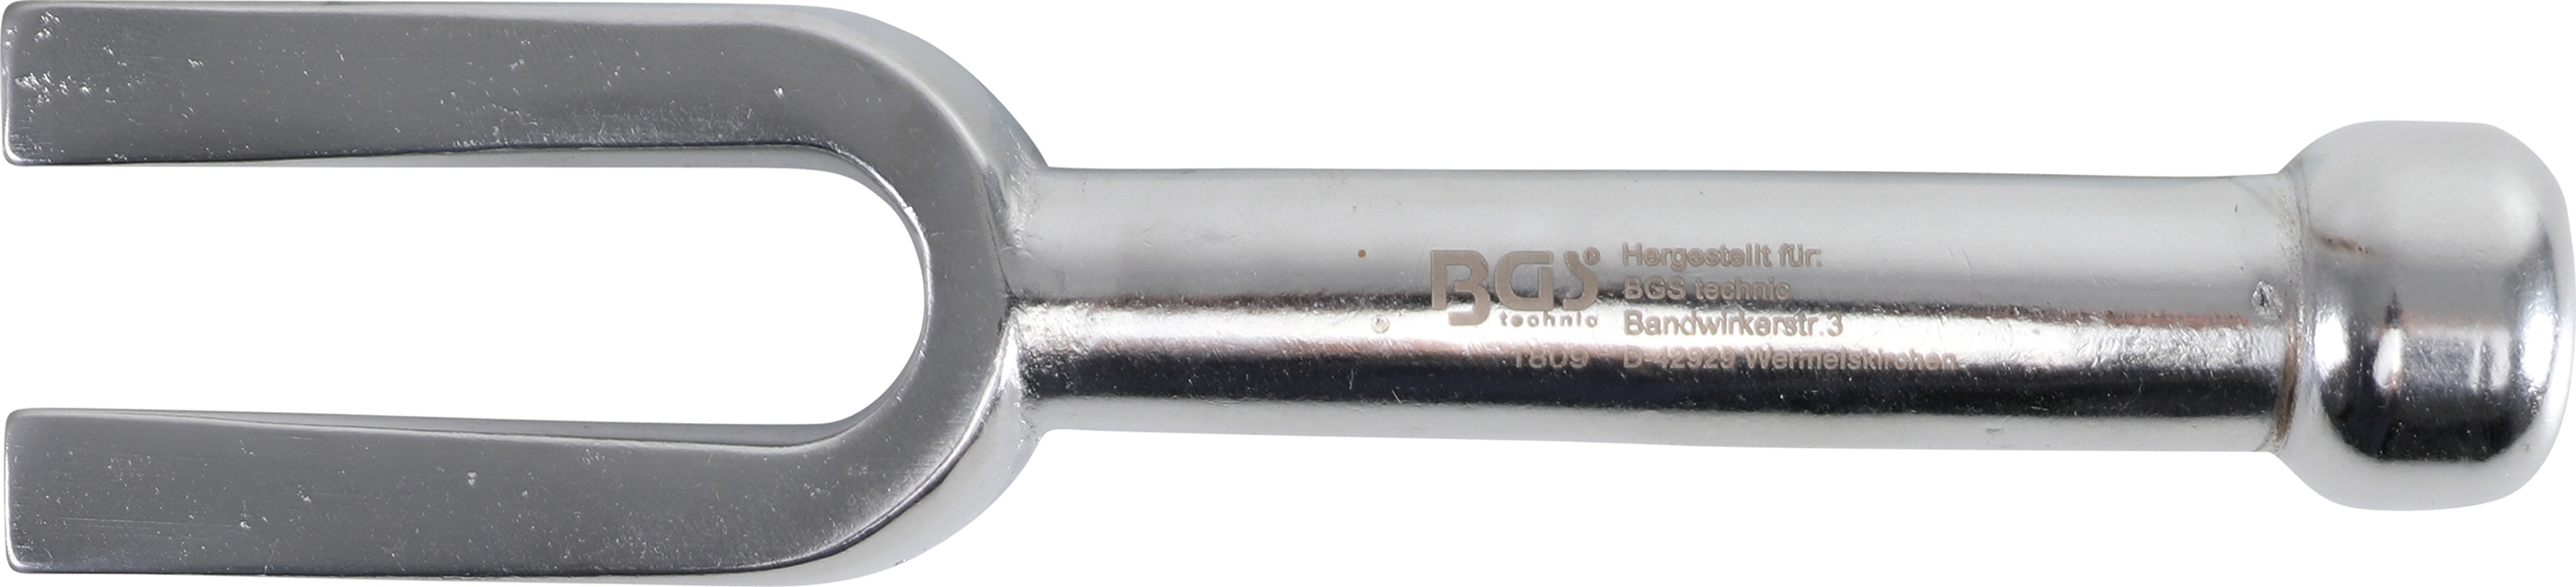 Kugelgelenk-Trenngabel, Länge 200 mm, 18 mm Gabel BGS 1809